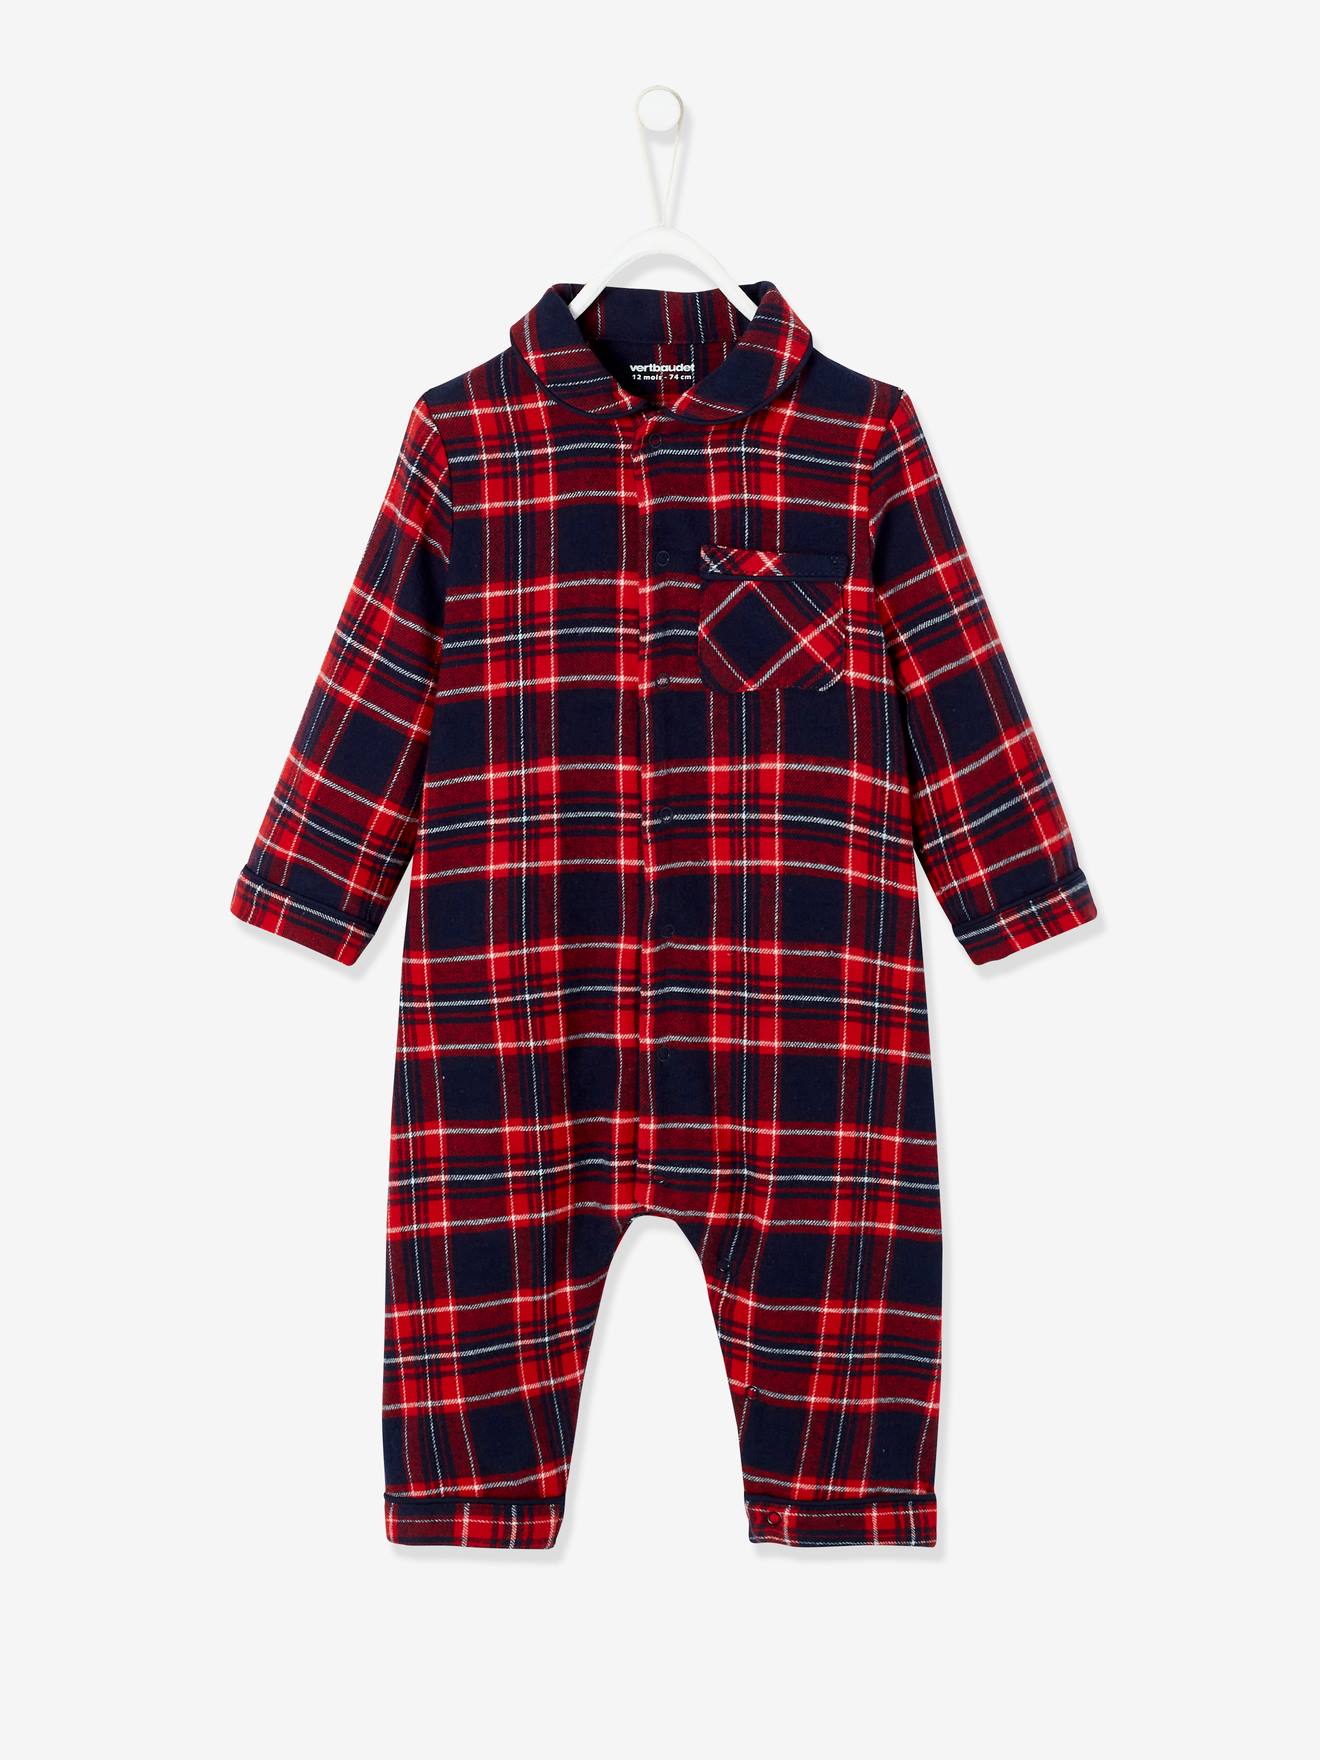 Pijama aos quadrados, em flanela, para bebé vermelho escuro quadrados